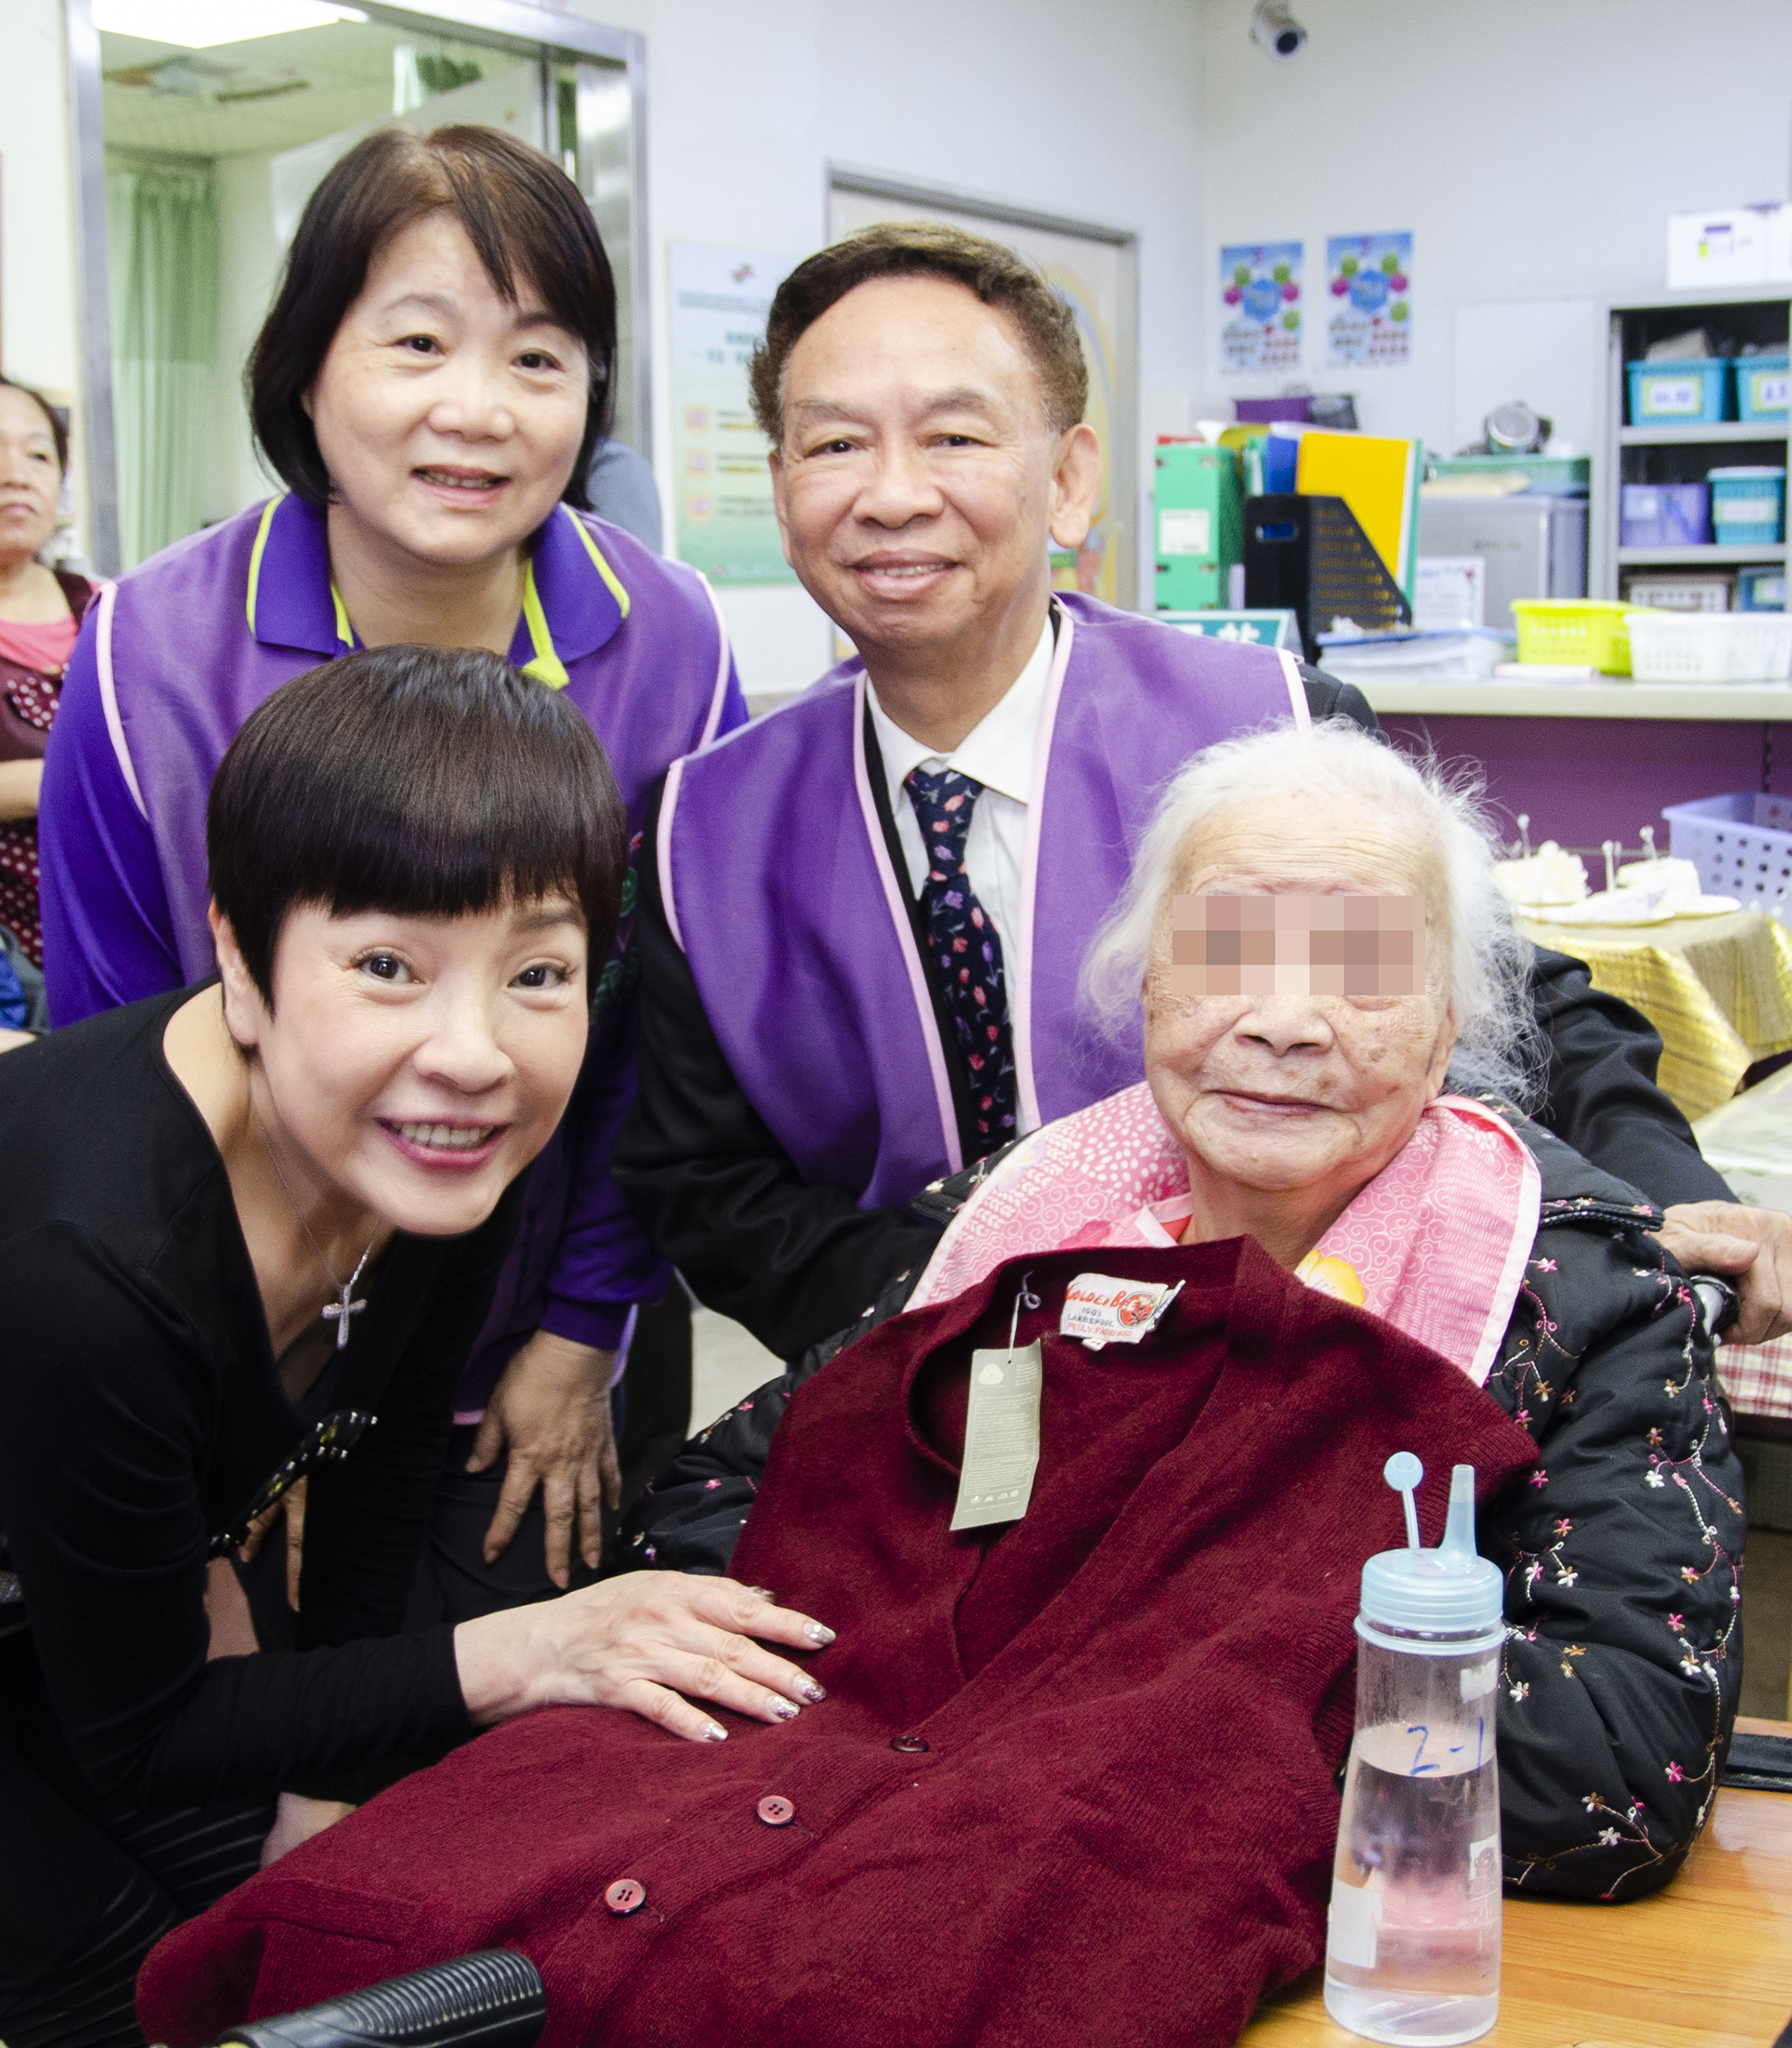 葉明全業務副總幫助高齡九十六歲的阿嬤贏得毛線衣。